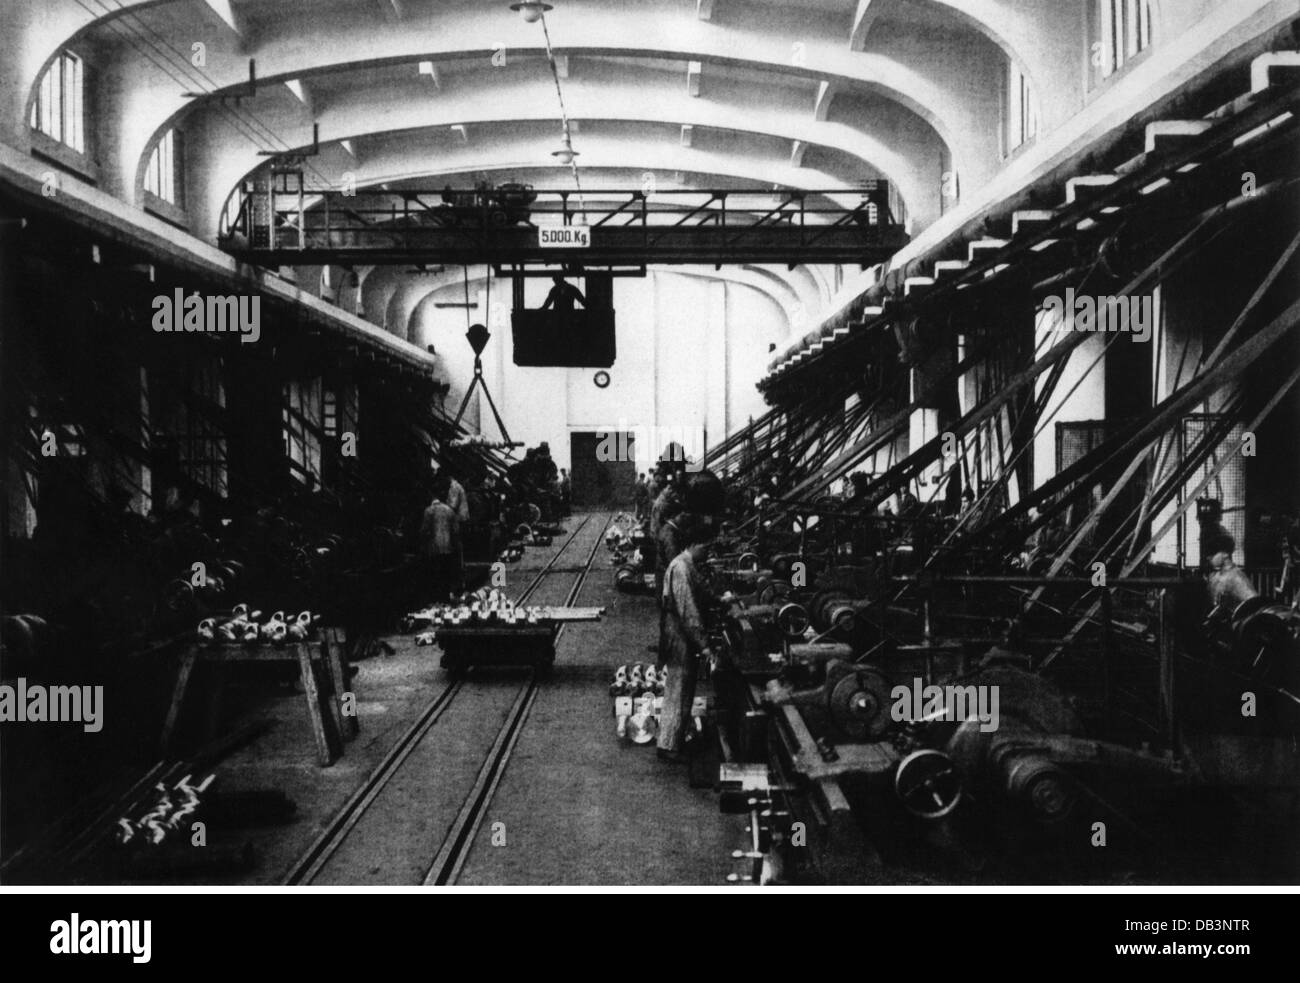 Industrie, usine, salle de production pour les vilebrequins, vers 1900, droits additionnels-Clearences-non disponible Banque D'Images